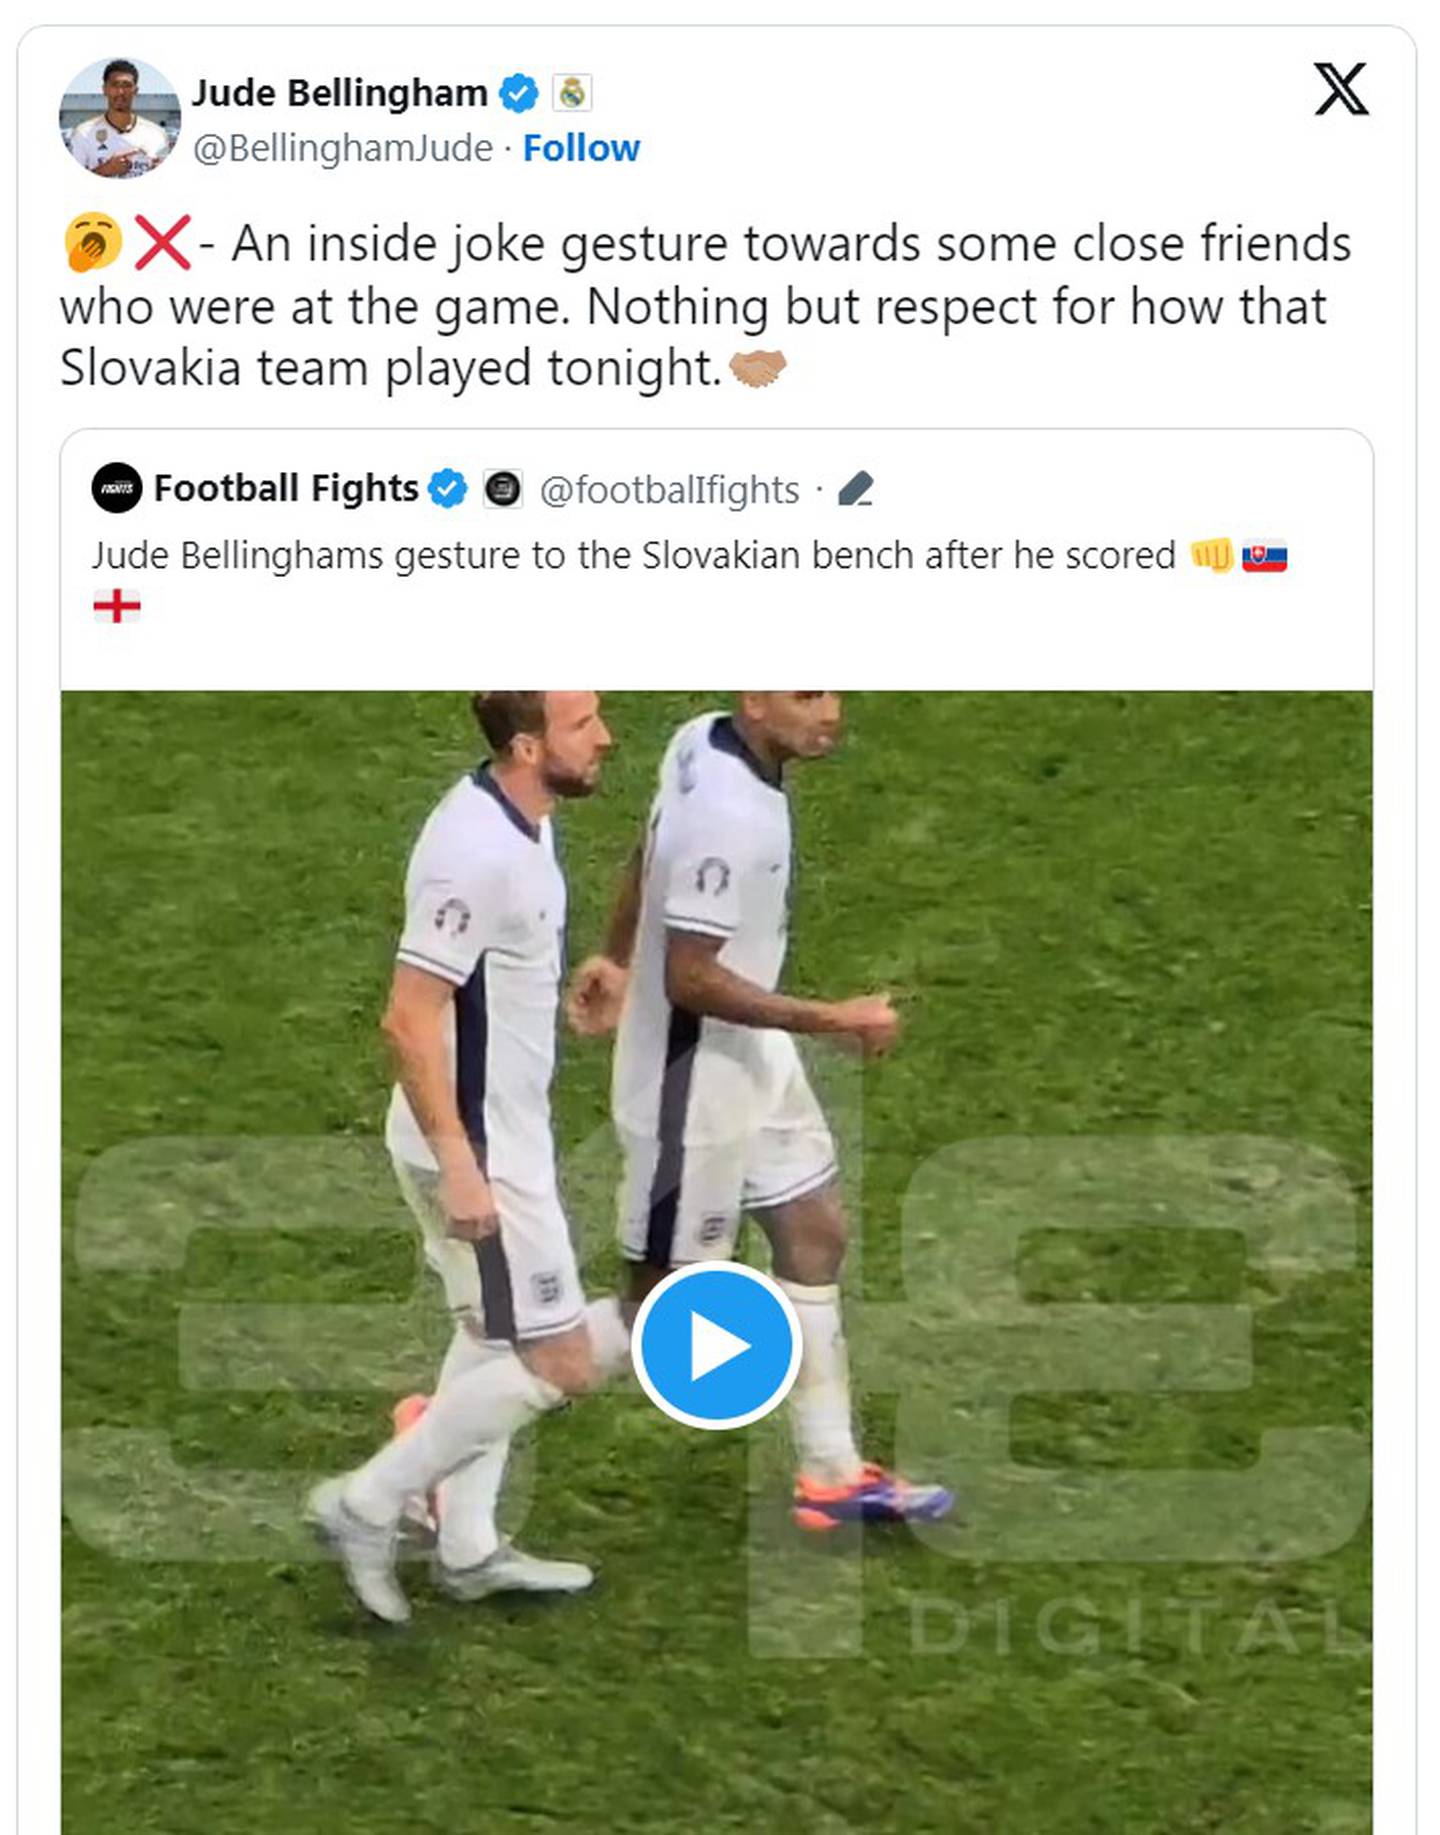 Bellingham explicó en redes sociales que el gesto era una "broma interna" con amigos cercanos que estaban en el estadio.